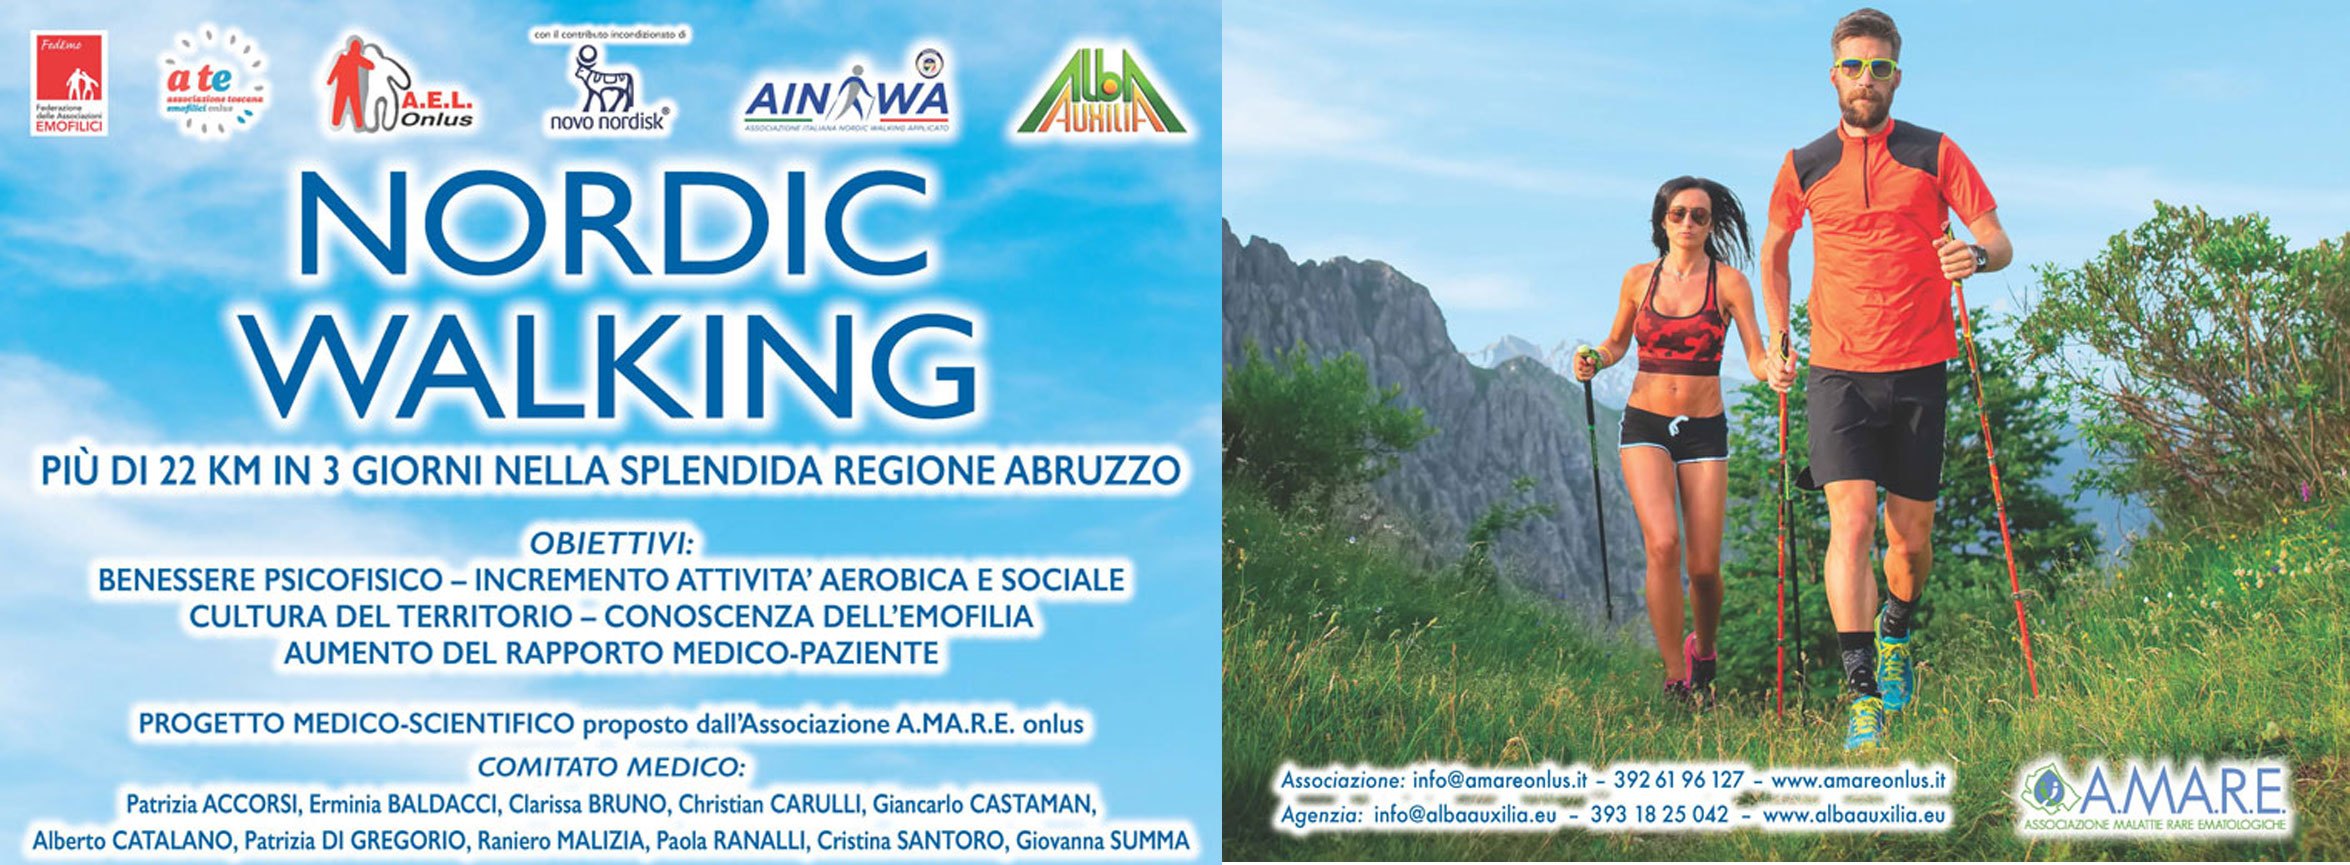 AMARE Nordic Walking Abruzzo